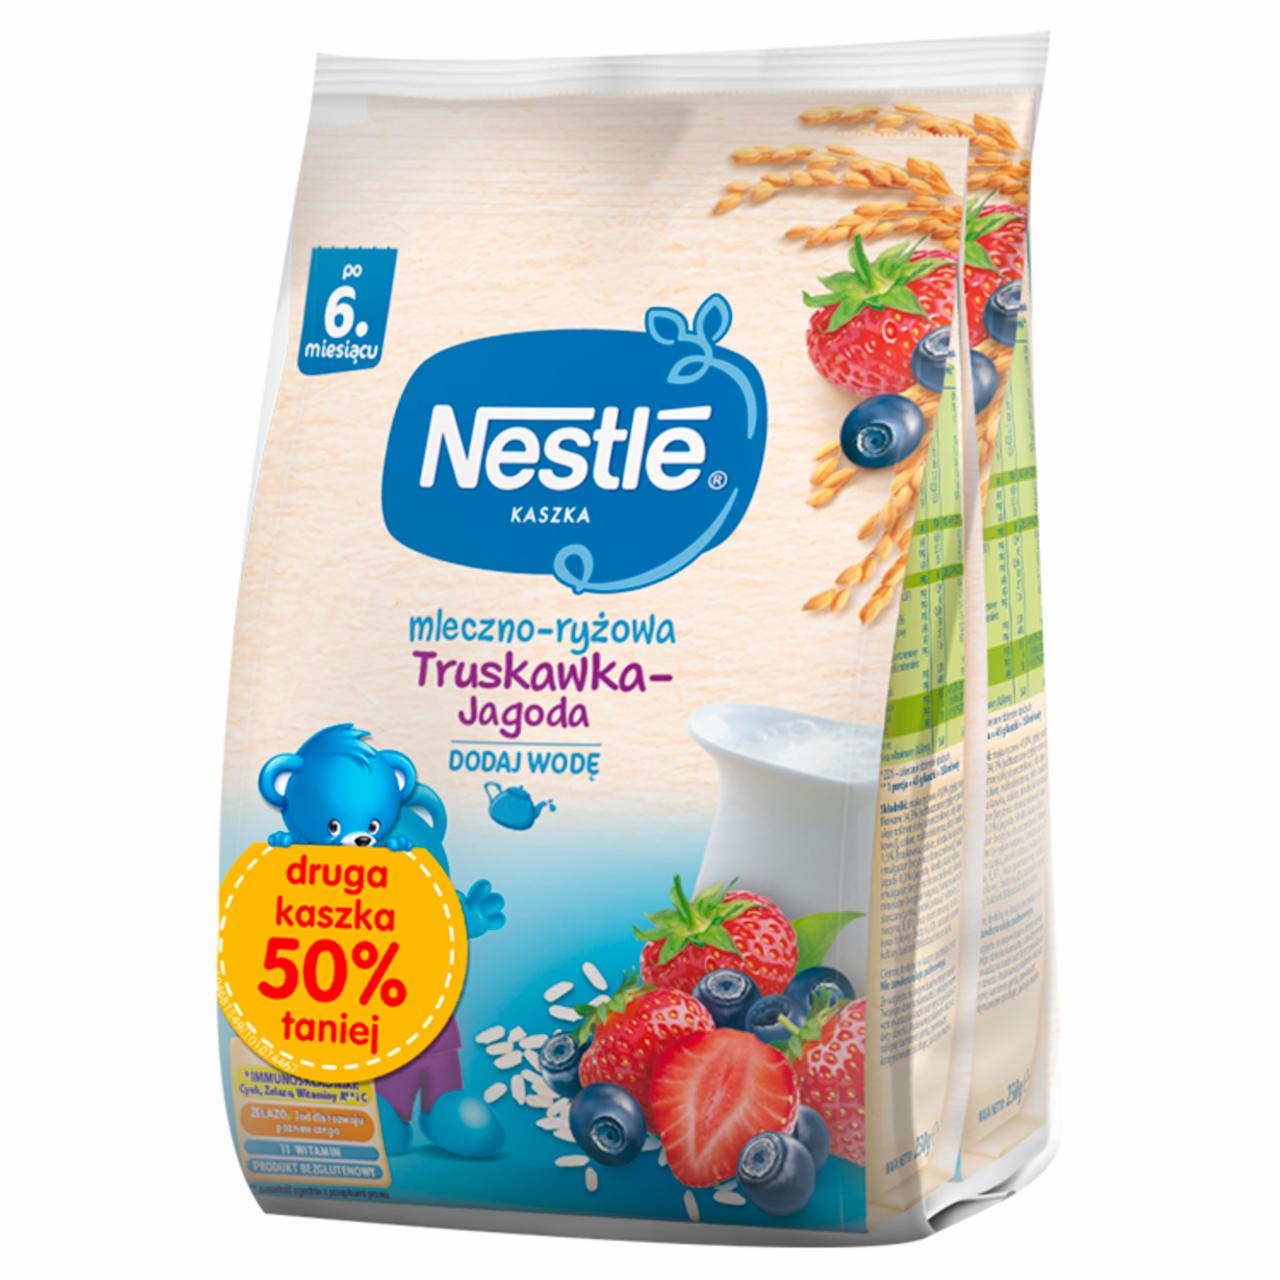 Zdjęcia - Nestlé Kaszka mleczno-ryżowa truskawka-jagoda po 6. miesiącu 460 g (2 x 230 g)